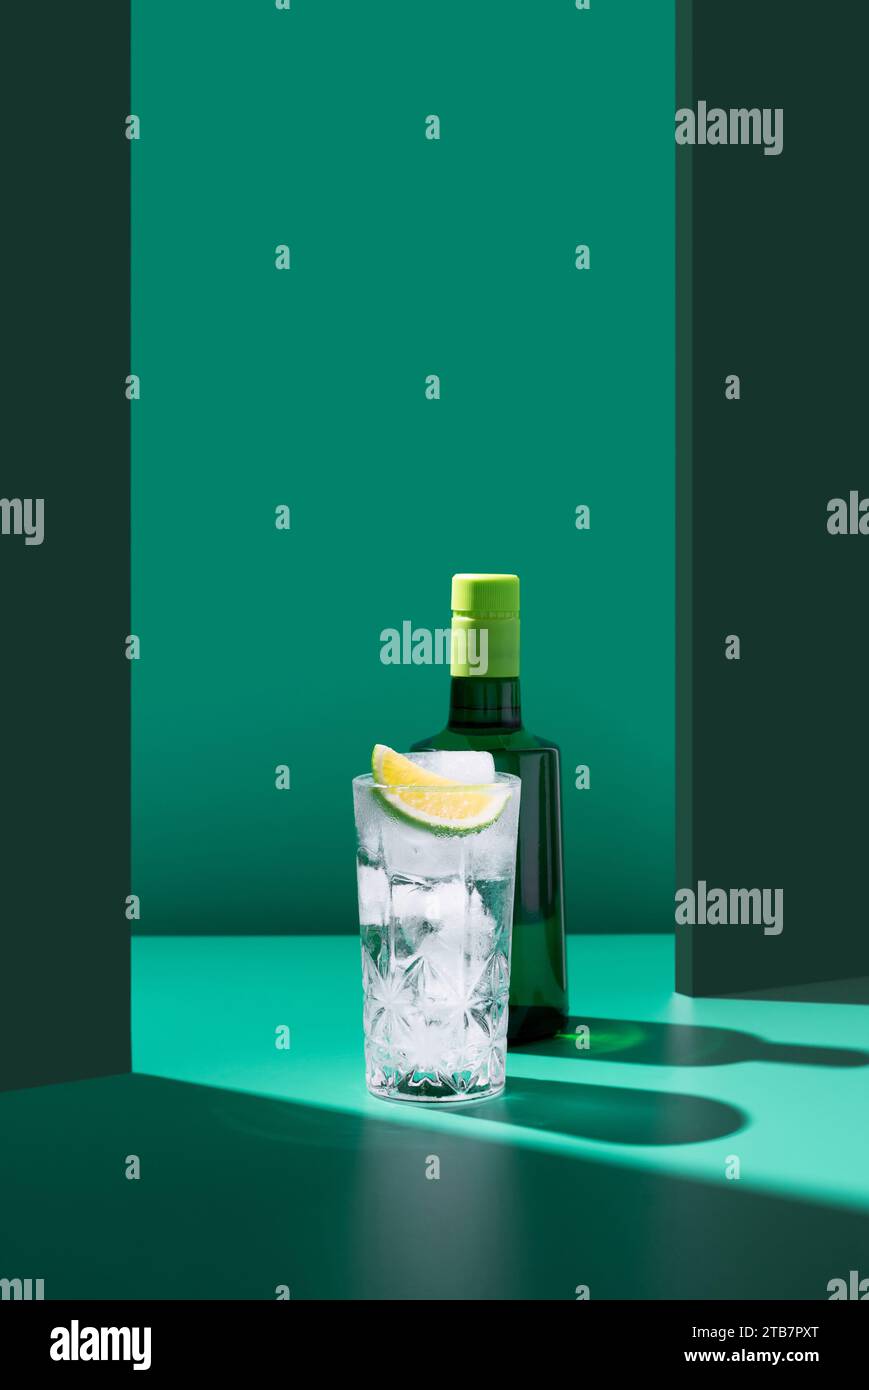 Une composition minimaliste avec une bouteille de gin derrière un verre d'eau tonique orné d'une tranche de citron vert, le tout sur un fond vert bicolore. Banque D'Images